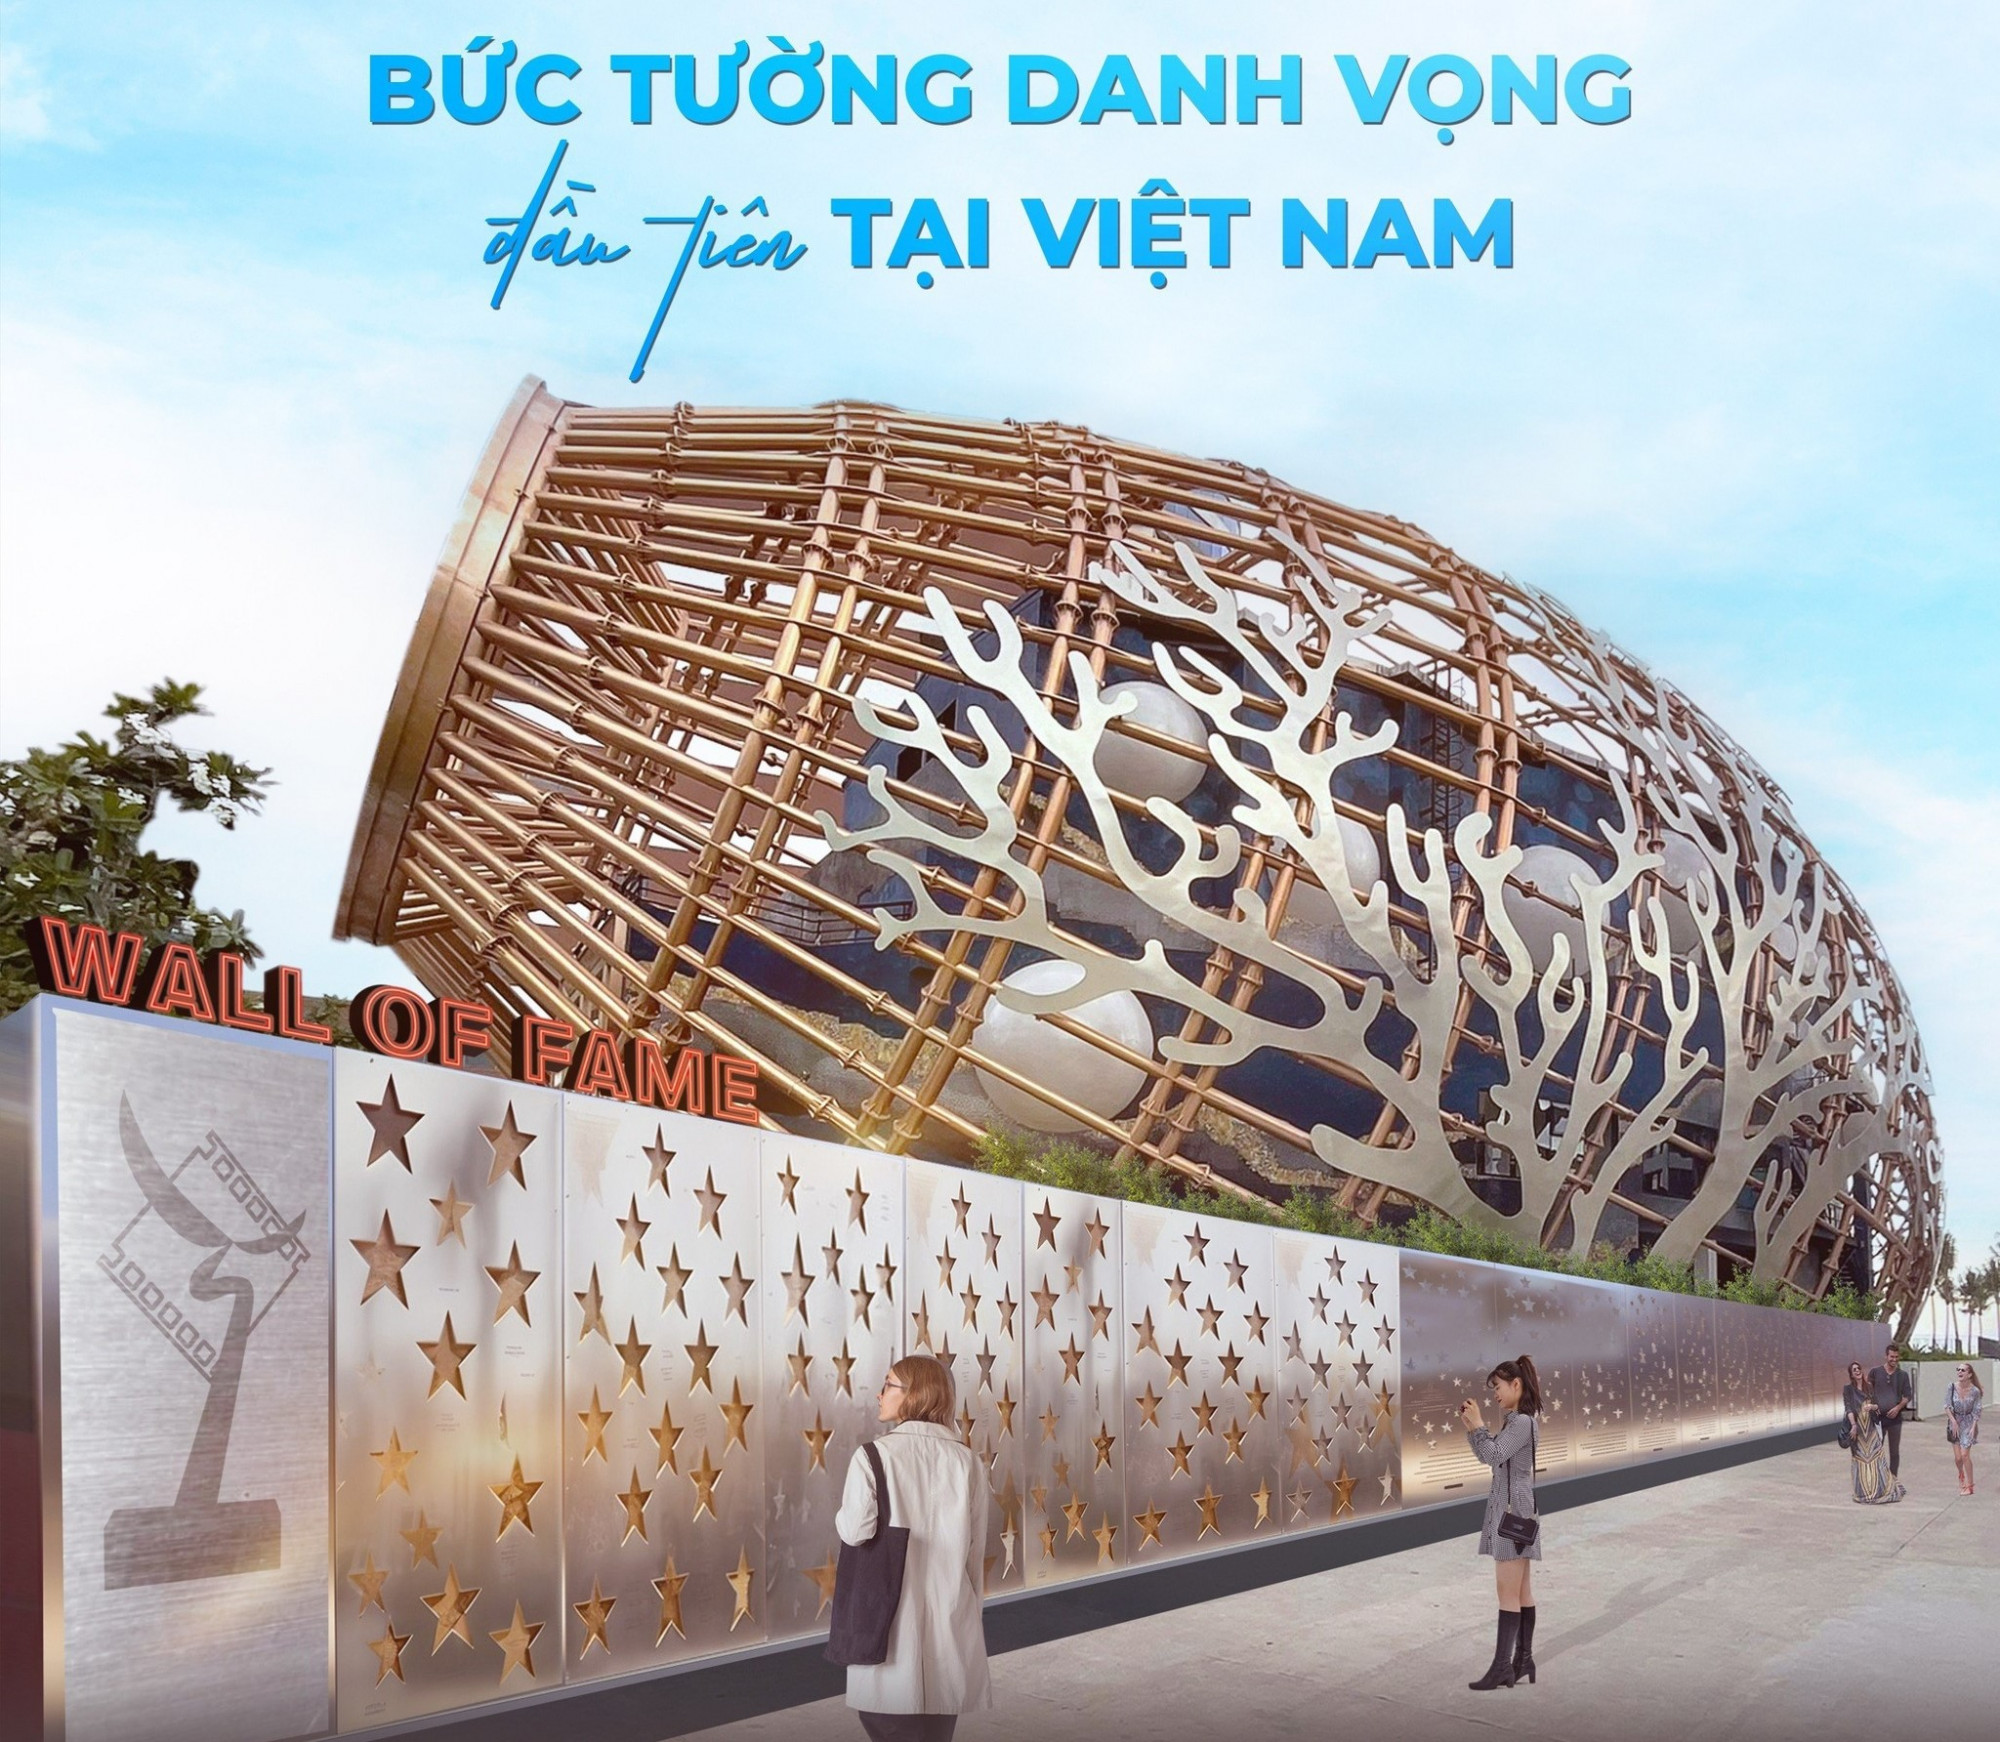 Bức tường danh vọng đầu tiên tại Việt Nam khắc 433 ngôi sao vinh danh những tác phẩm và cá nhân đoạt giải qua các mùa giải của Cánh diều